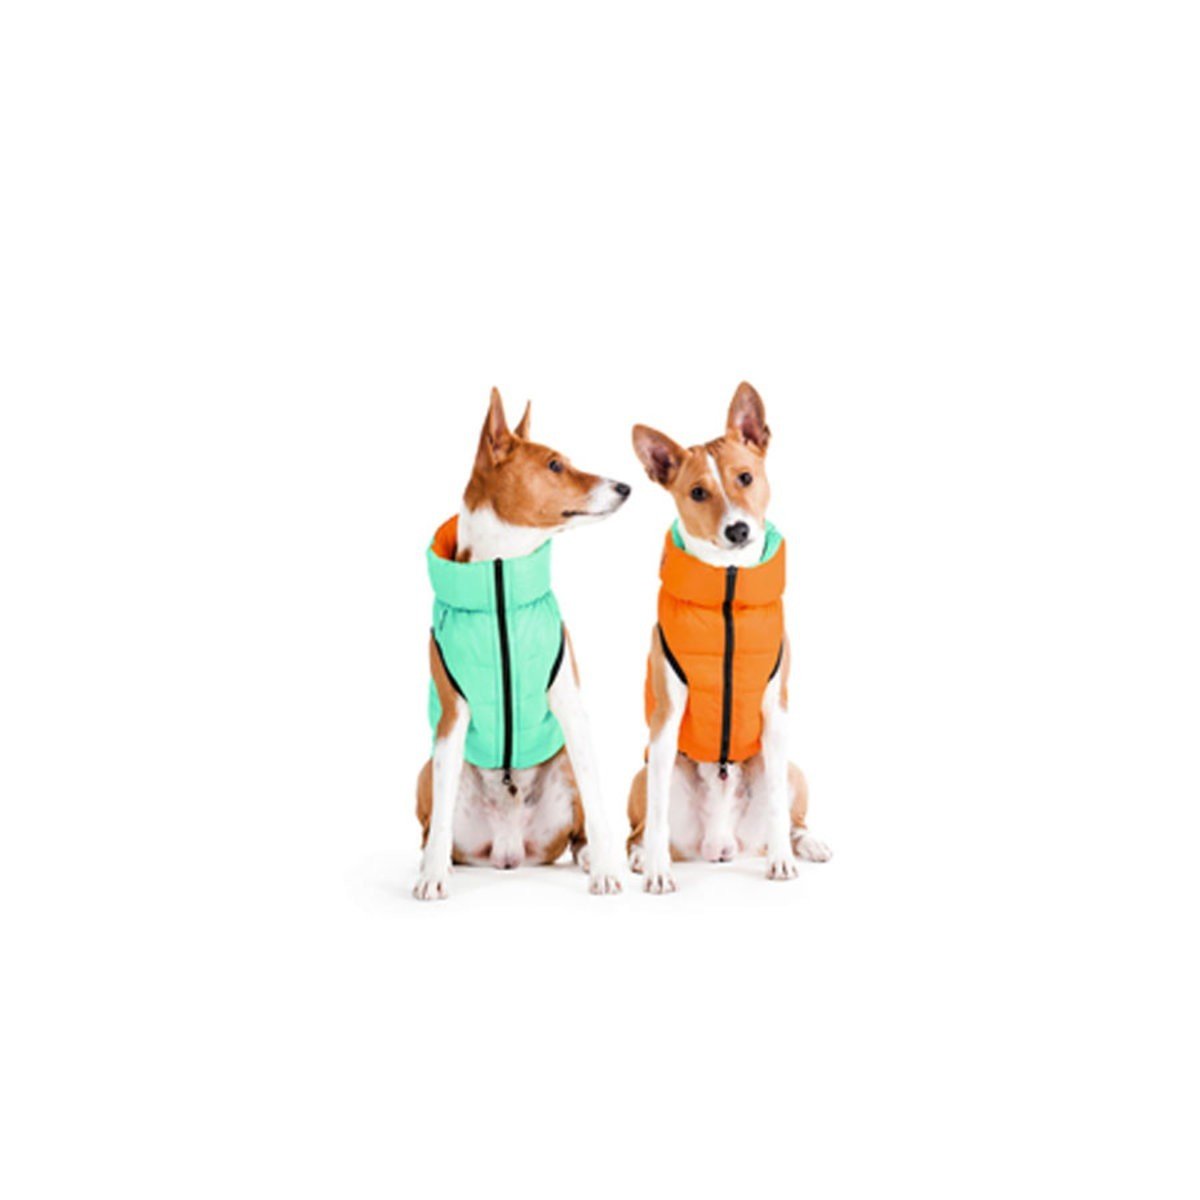 Курточка для собак AiryVest Lumi двухсторонняя, светящаяся в темноте, M45, салатово-оранжевая - фото 2